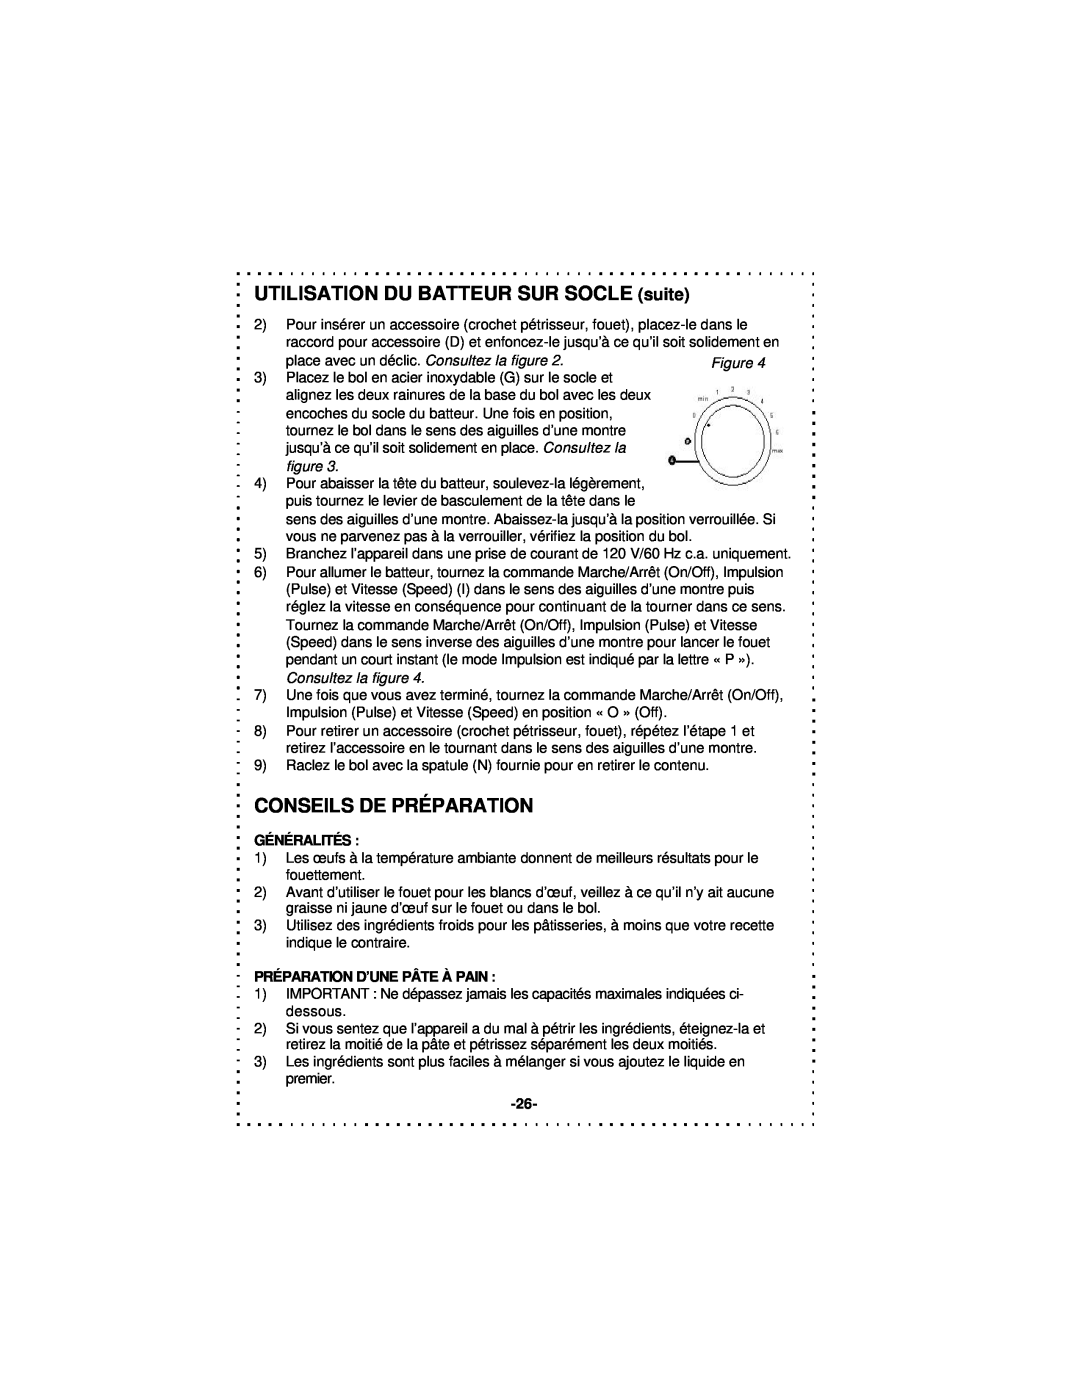 DeLonghi DSM5 - 7 Series instruction manual UTILISATION DU BATTEUR SUR SOCLE suite, Conseils De Préparation, Généralités 